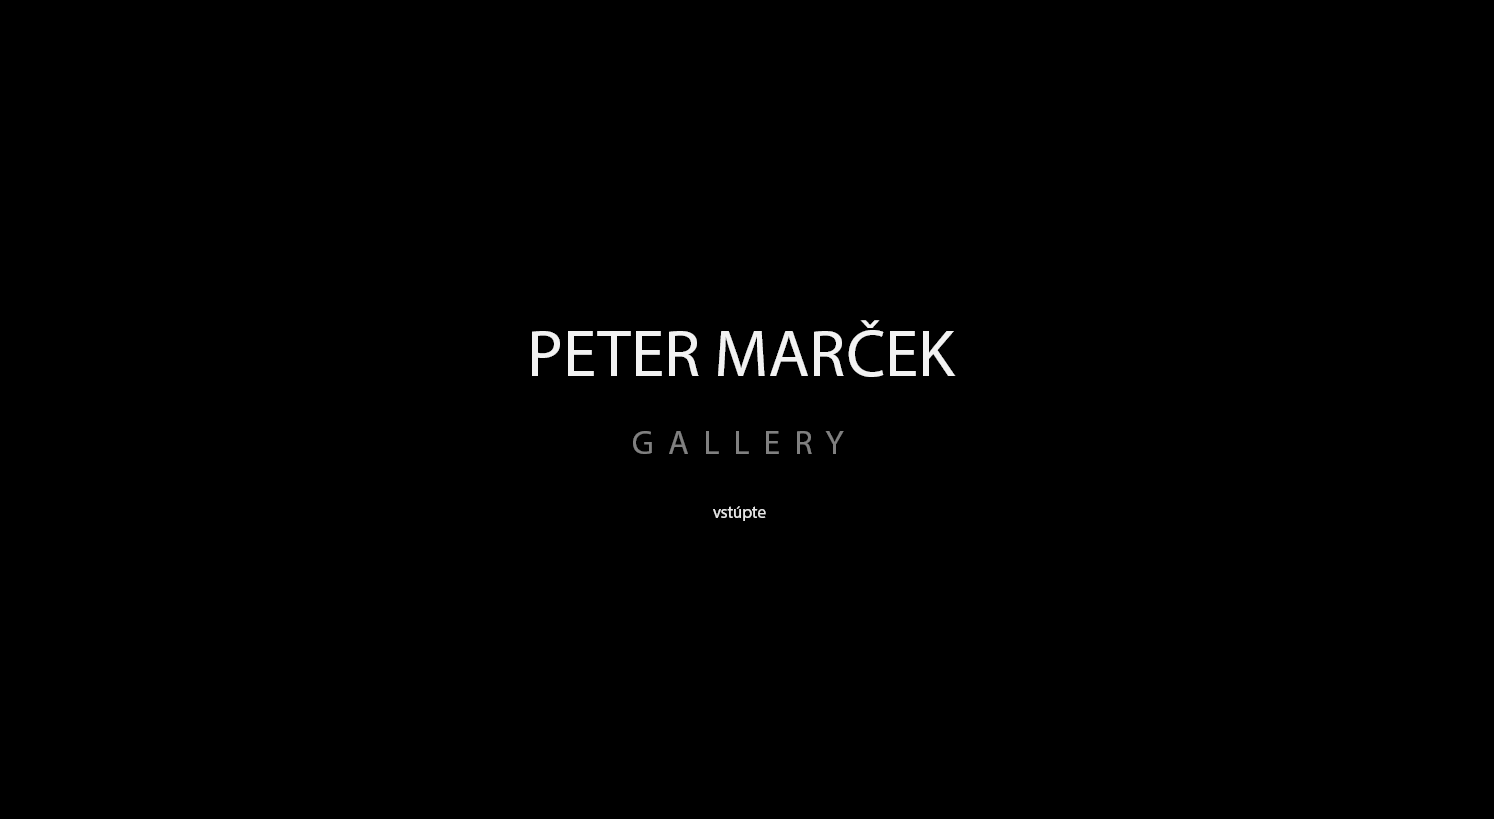 PETER MAREK GALLERY